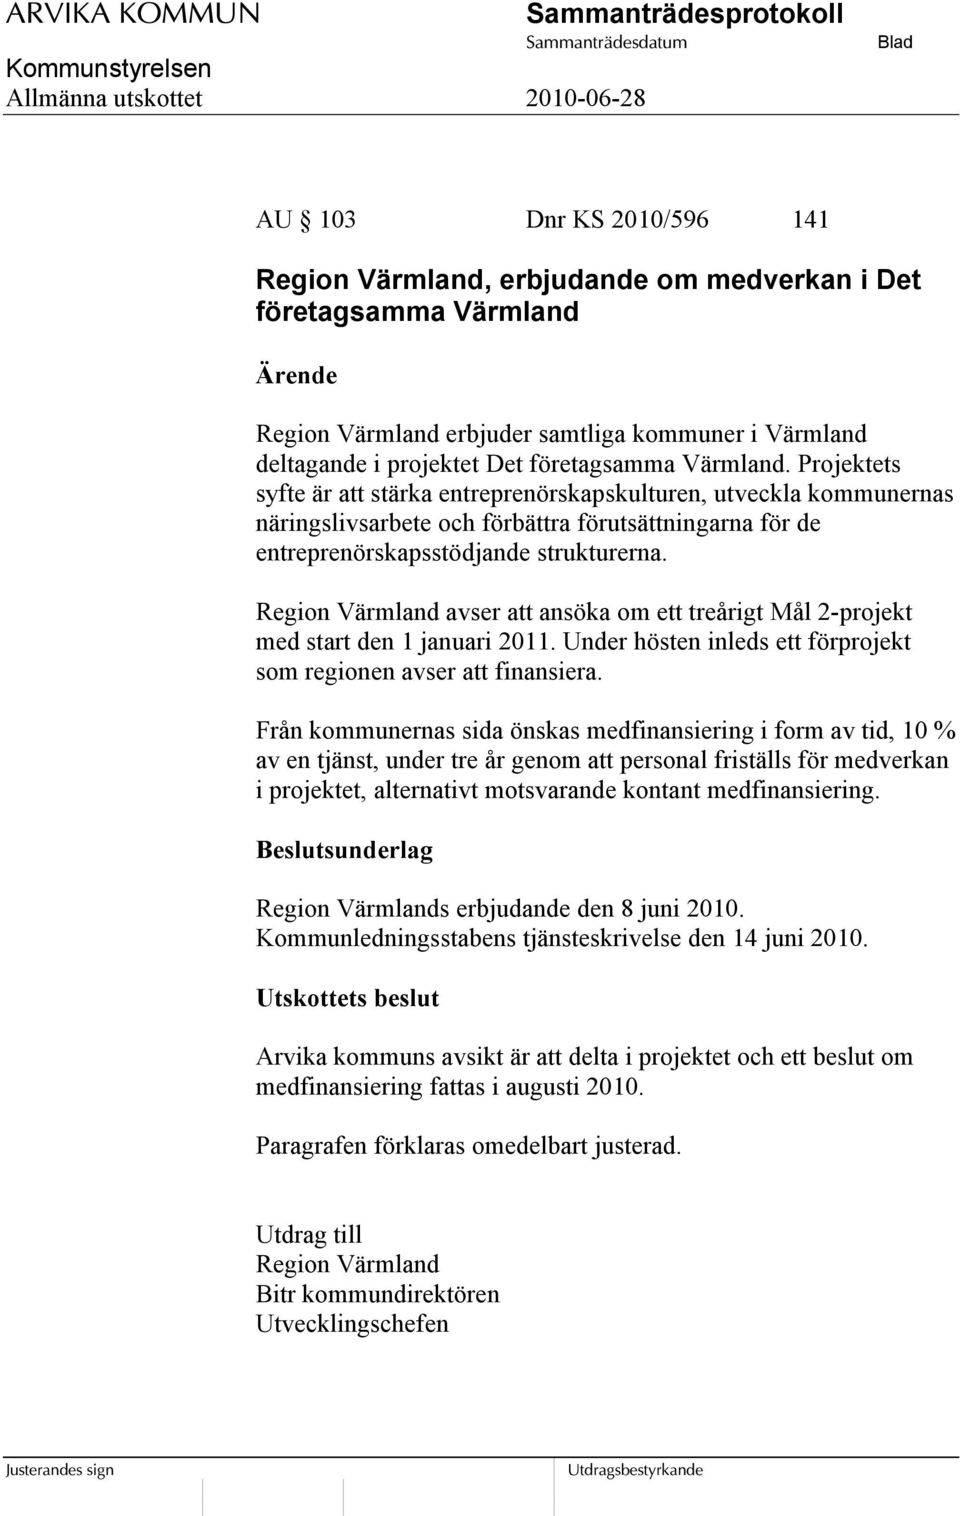 Region Värmland avser att ansöka om ett treårigt Mål 2-projekt med start den 1 januari 2011. Under hösten inleds ett förprojekt som regionen avser att finansiera.